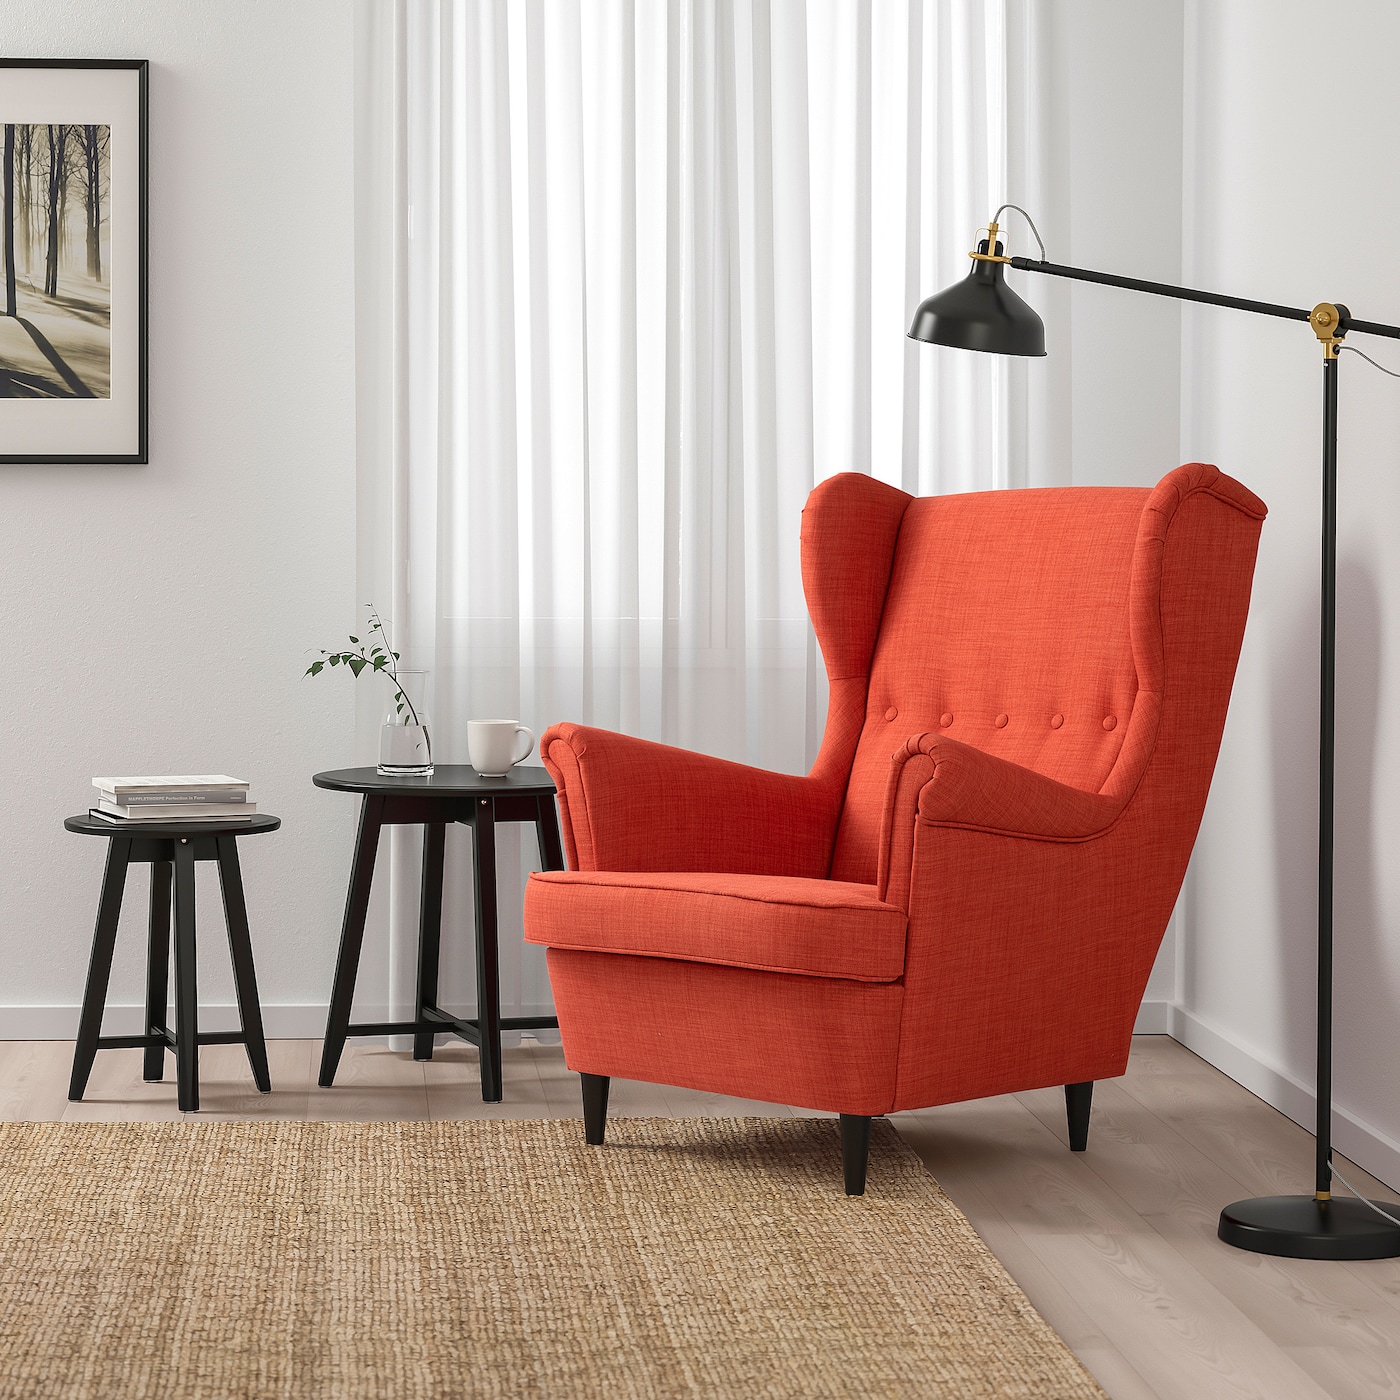 Как почистить кресло в домашних условиях?